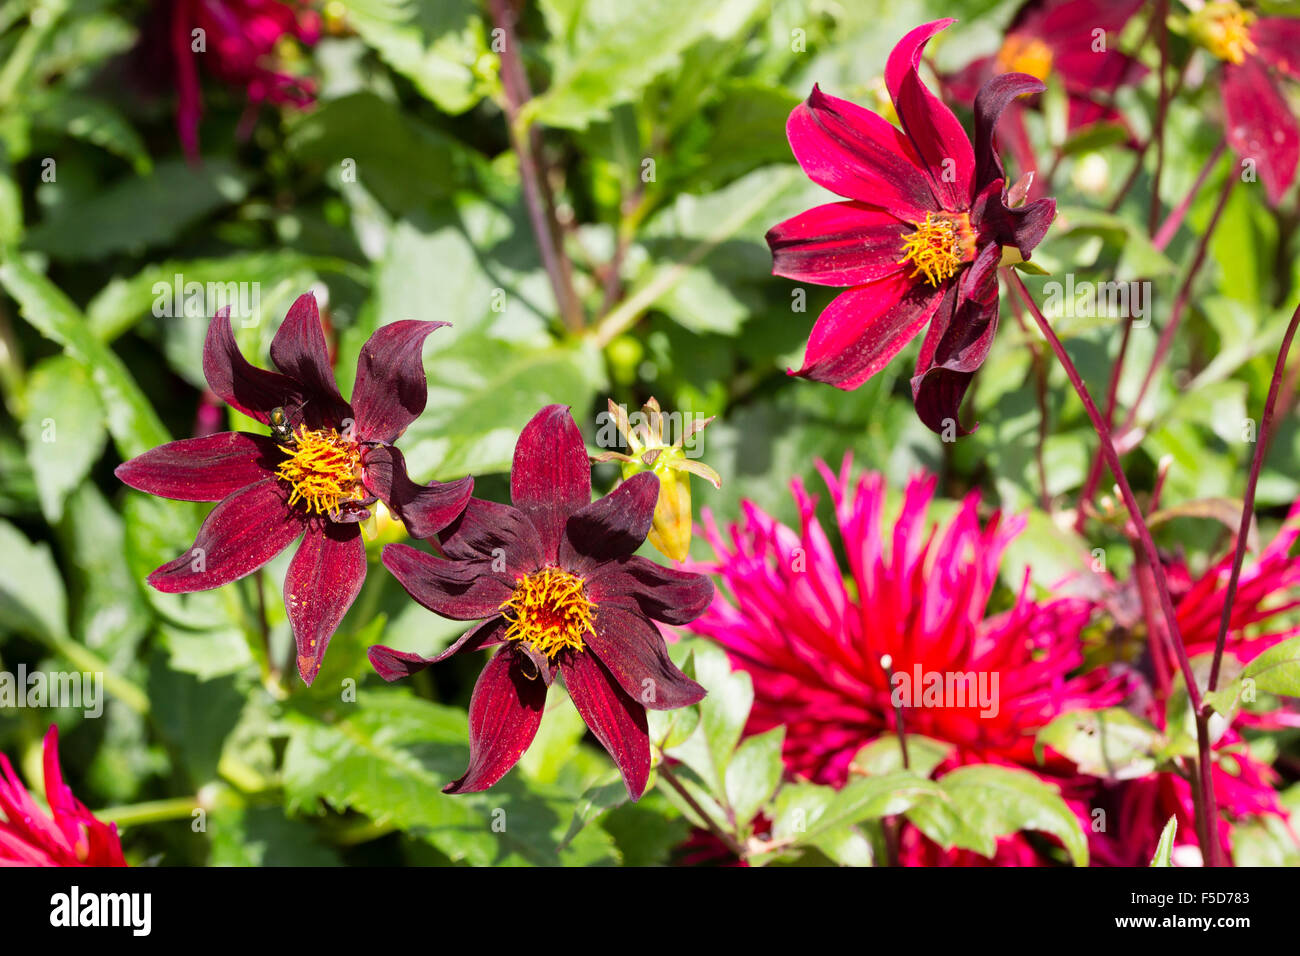 Solo flores de Dahlia "oscuro deseo" puede ser de color rojo oscuro o marrón con rayas rosa Foto de stock